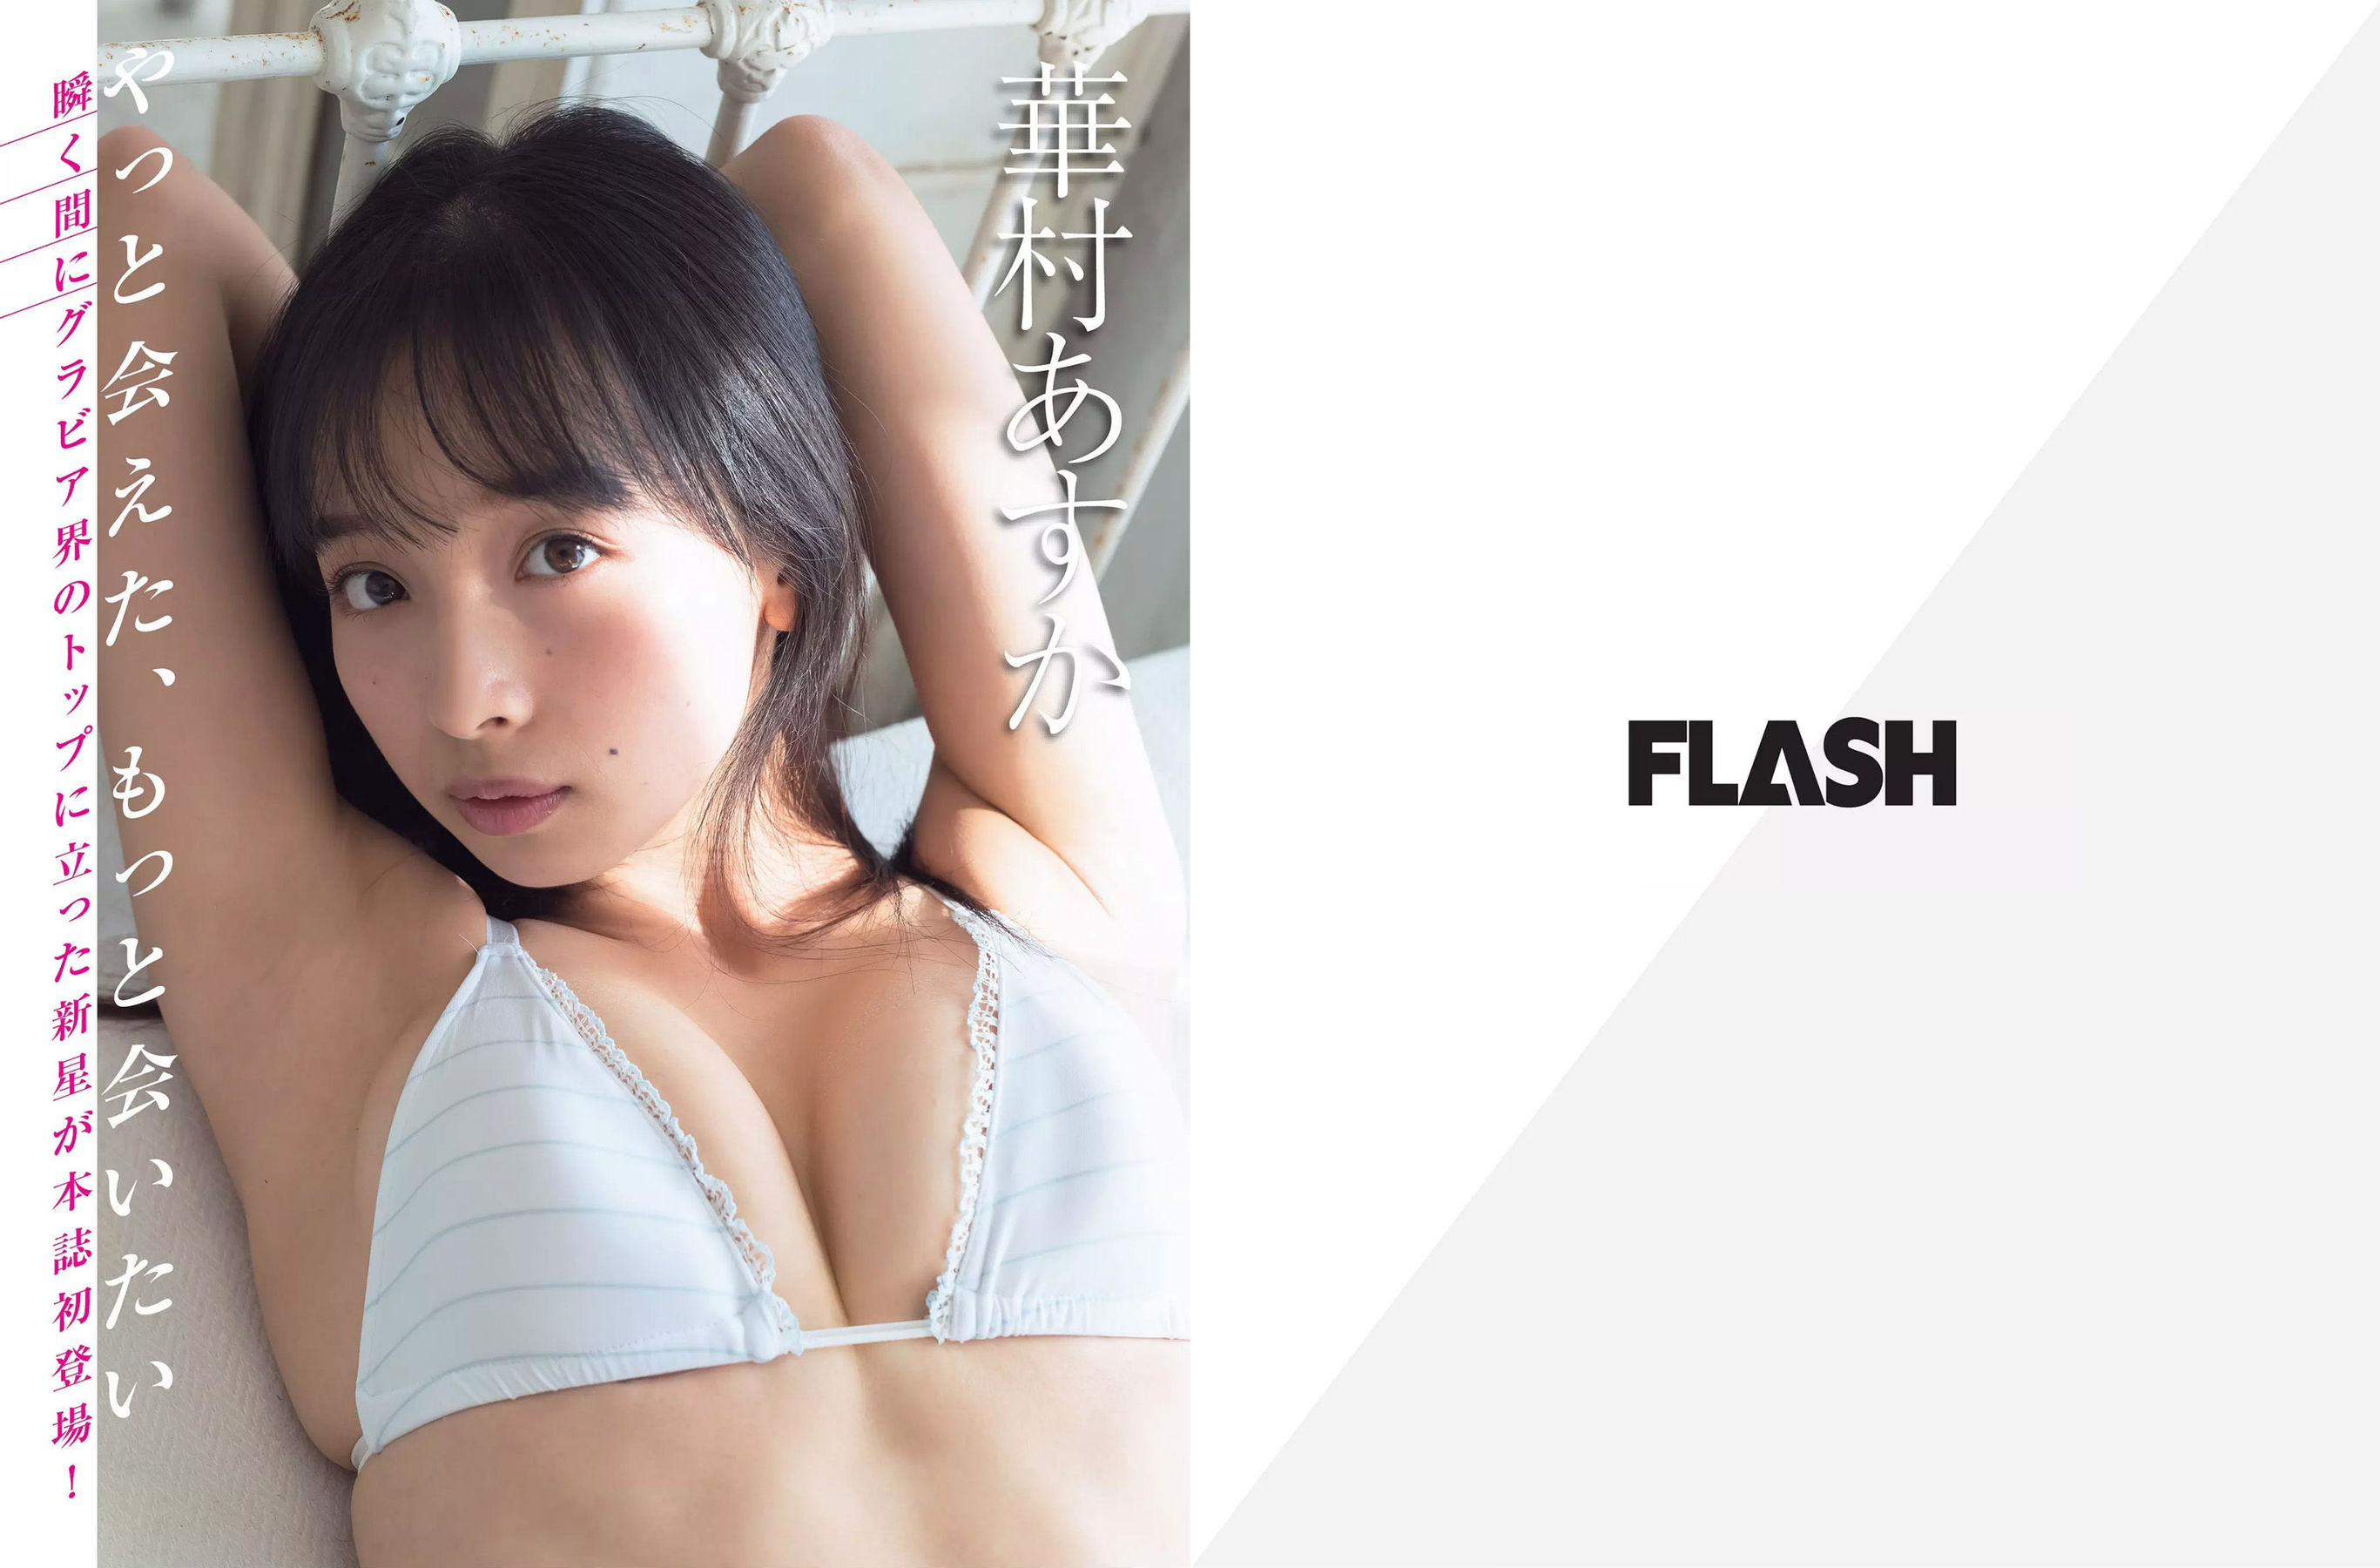 [FLASH]杂志:川崎绫高品质写真作品个人分享(19P)